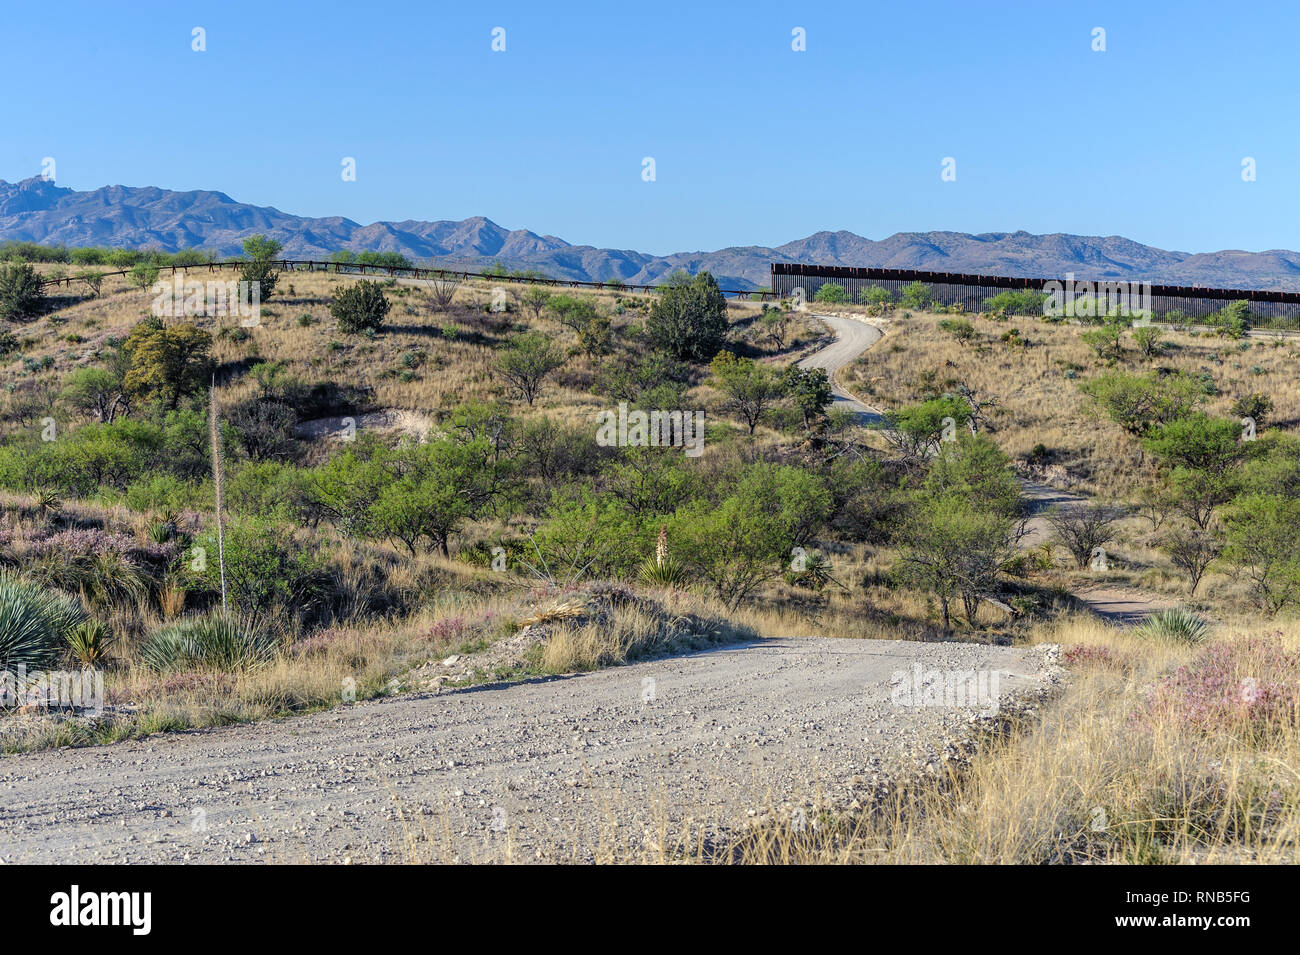 Frontière, nous montrant de hauteur barrière piétonne sur la droite à son extrémité est 7 miles à l'est de Nogales AZ., avec "véhicule barrière' sur la gauche ; Avril 2018 Banque D'Images